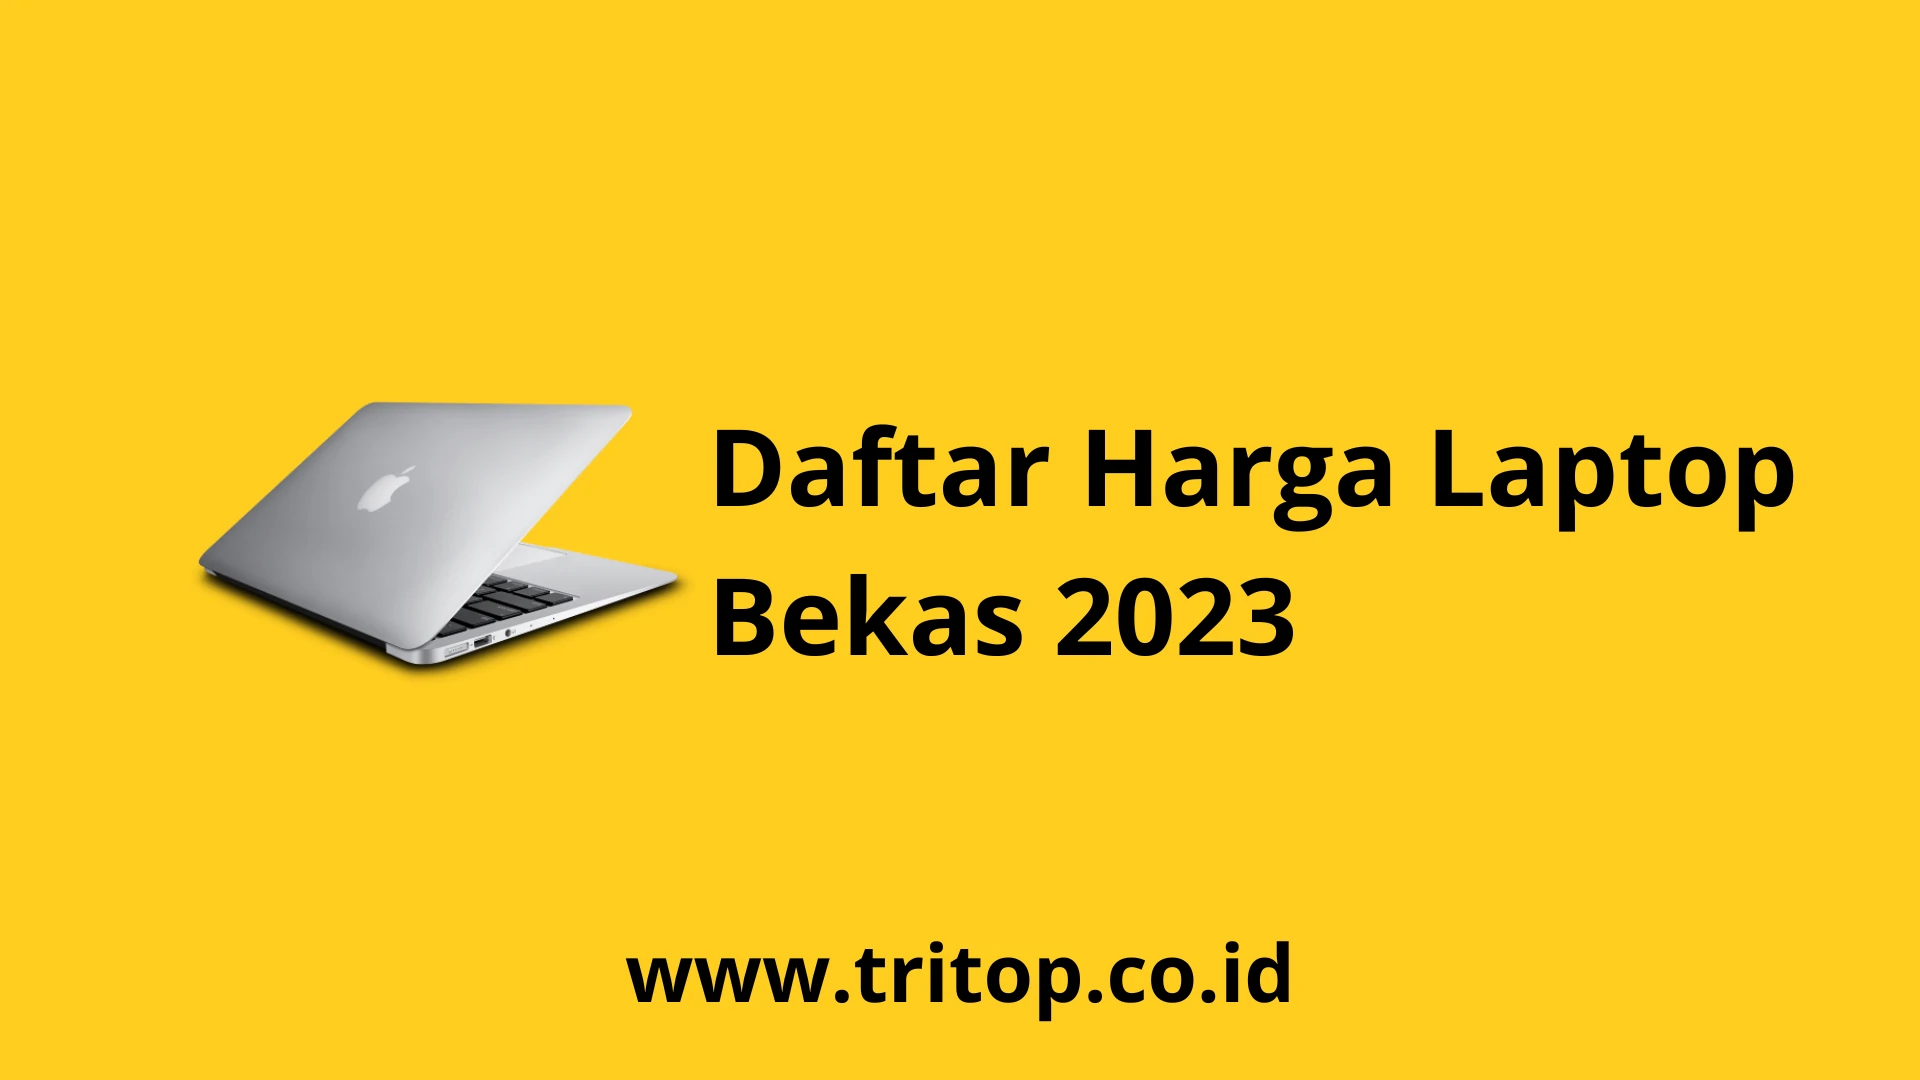 Harga Laptop Bekas 2023 Tritop.co.id